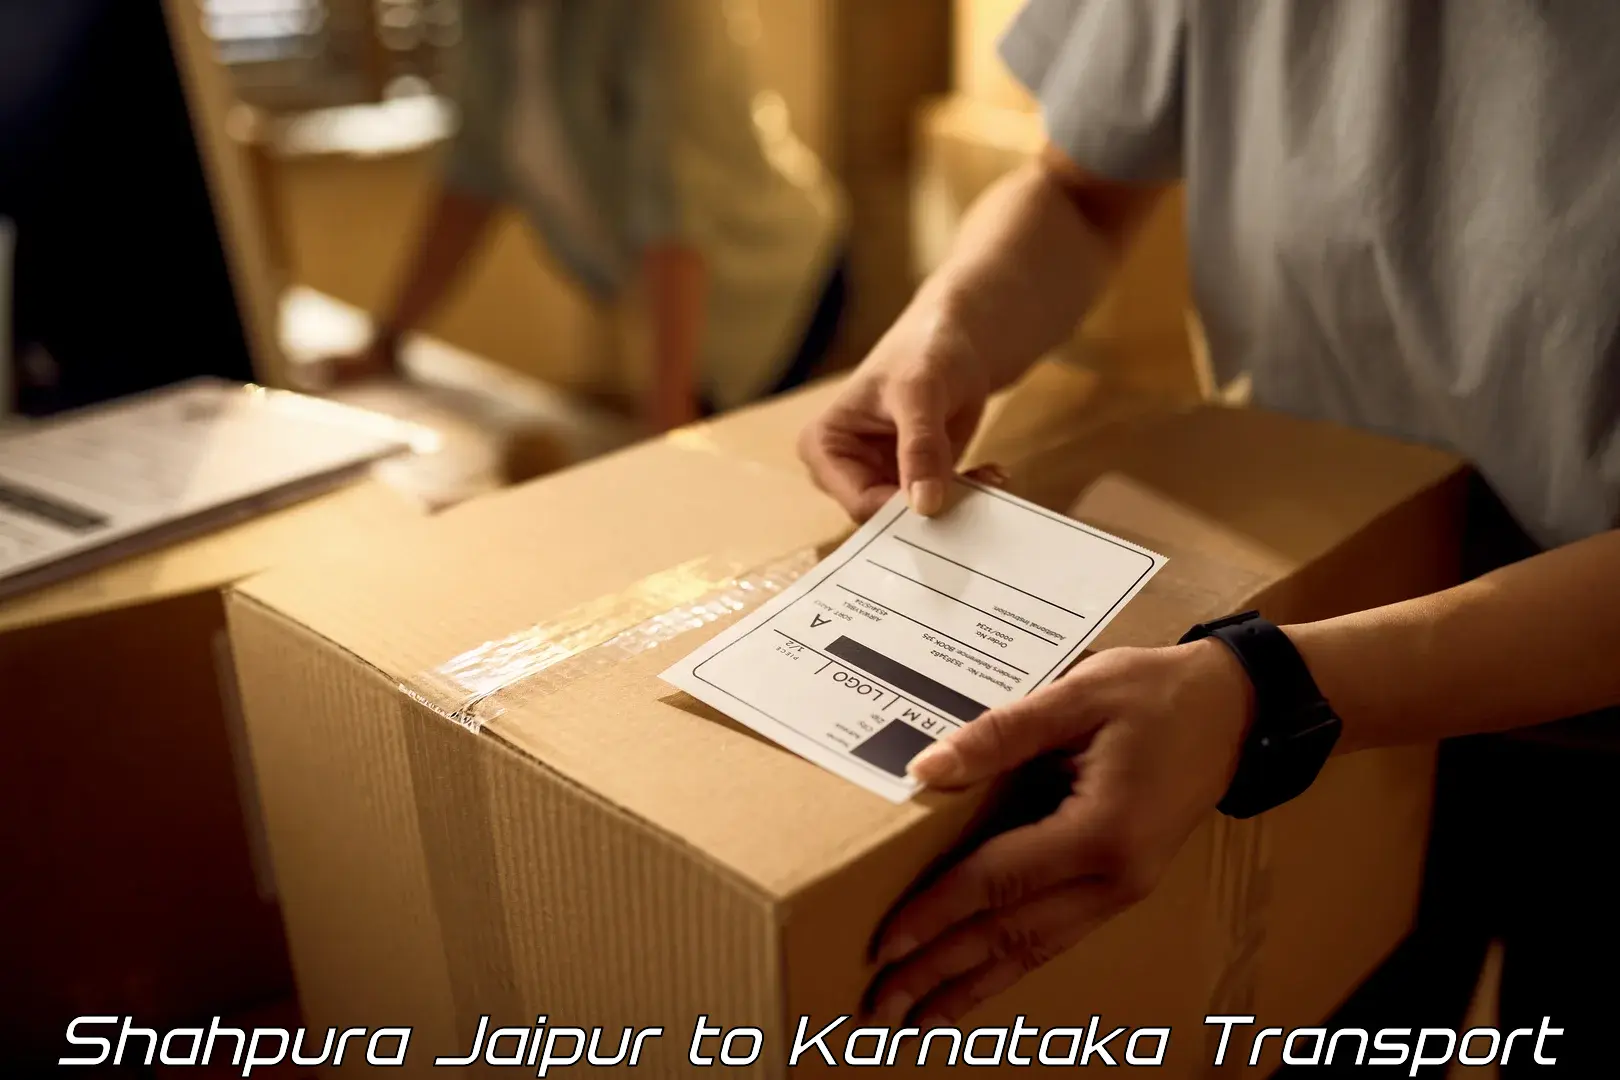 Furniture transport service Shahpura Jaipur to Haveri